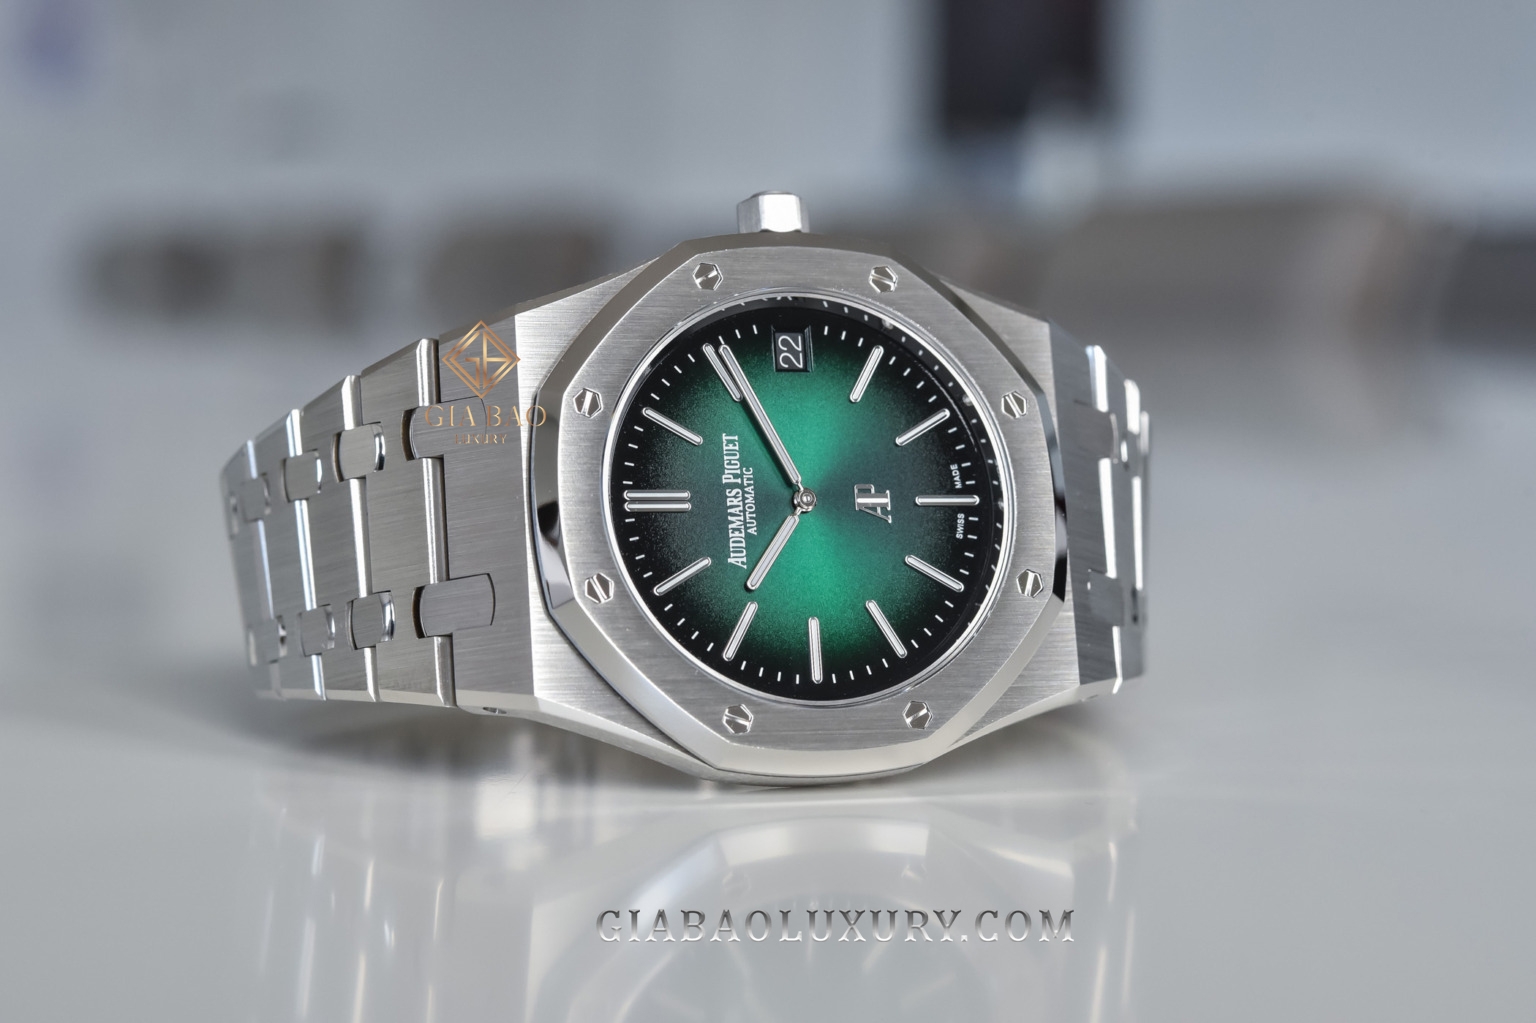 Đồng hồ Audemars Piguet Royal Oak Jumbo Extra-Thin 15202PT.OO.1240PT.01 mới nhất 2021 được trang bị bộ máy 2121